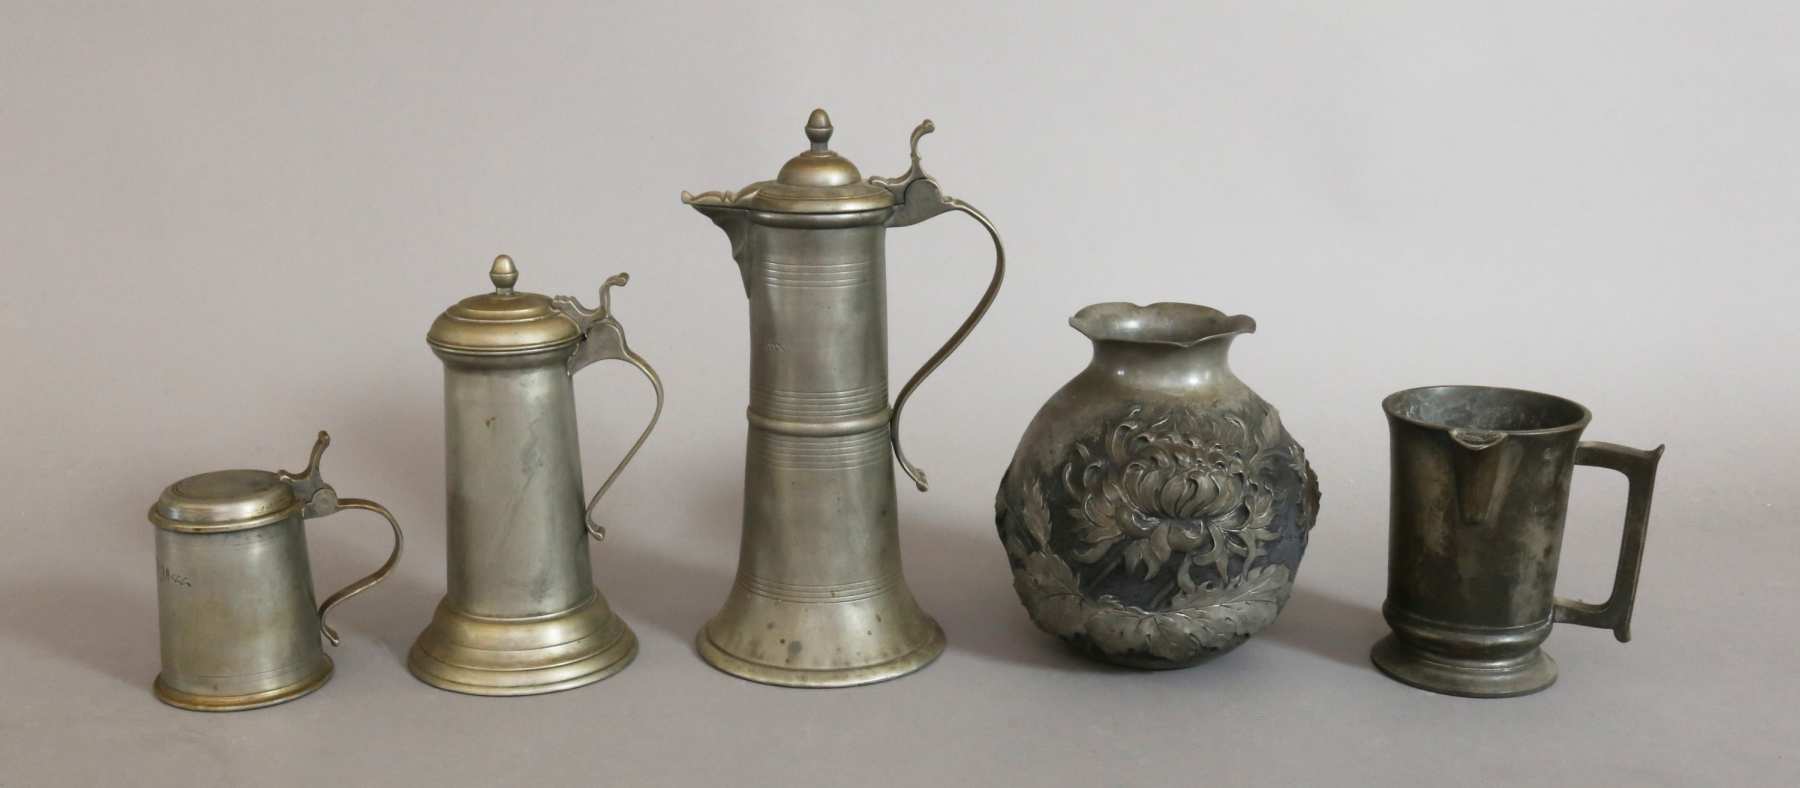 Fünf Teile Zinn: Stitze, Vase (sign. M.Montagne), Schenkkanne, zwei Krüge.